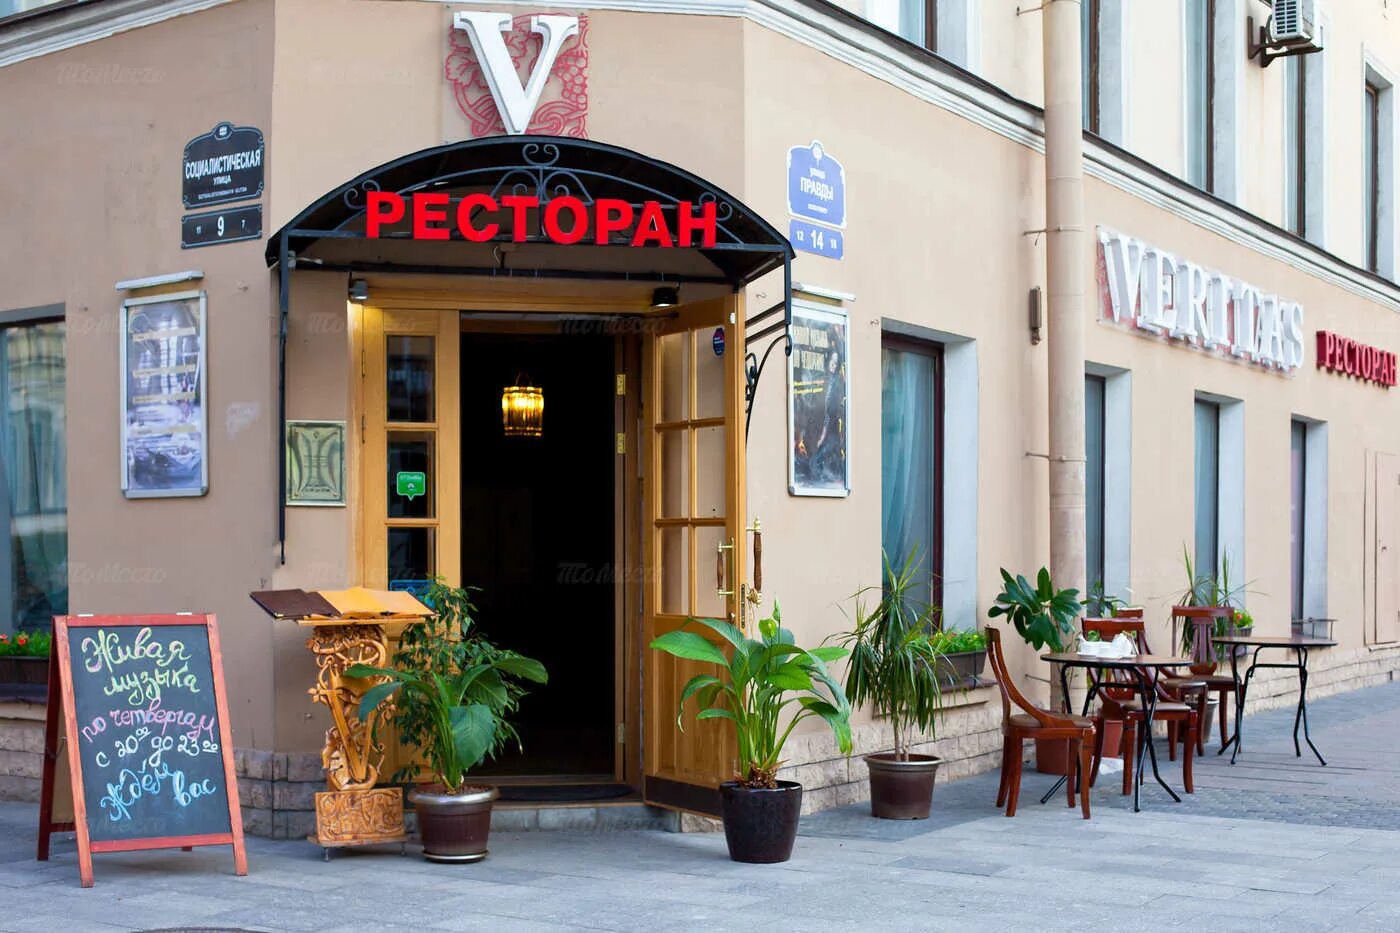 Ресторан Веритас. Veritas ресторан Санкт-Петербург. Вход в ресторан с улицы. Ресторан вид с улицы. Магазин ул правды